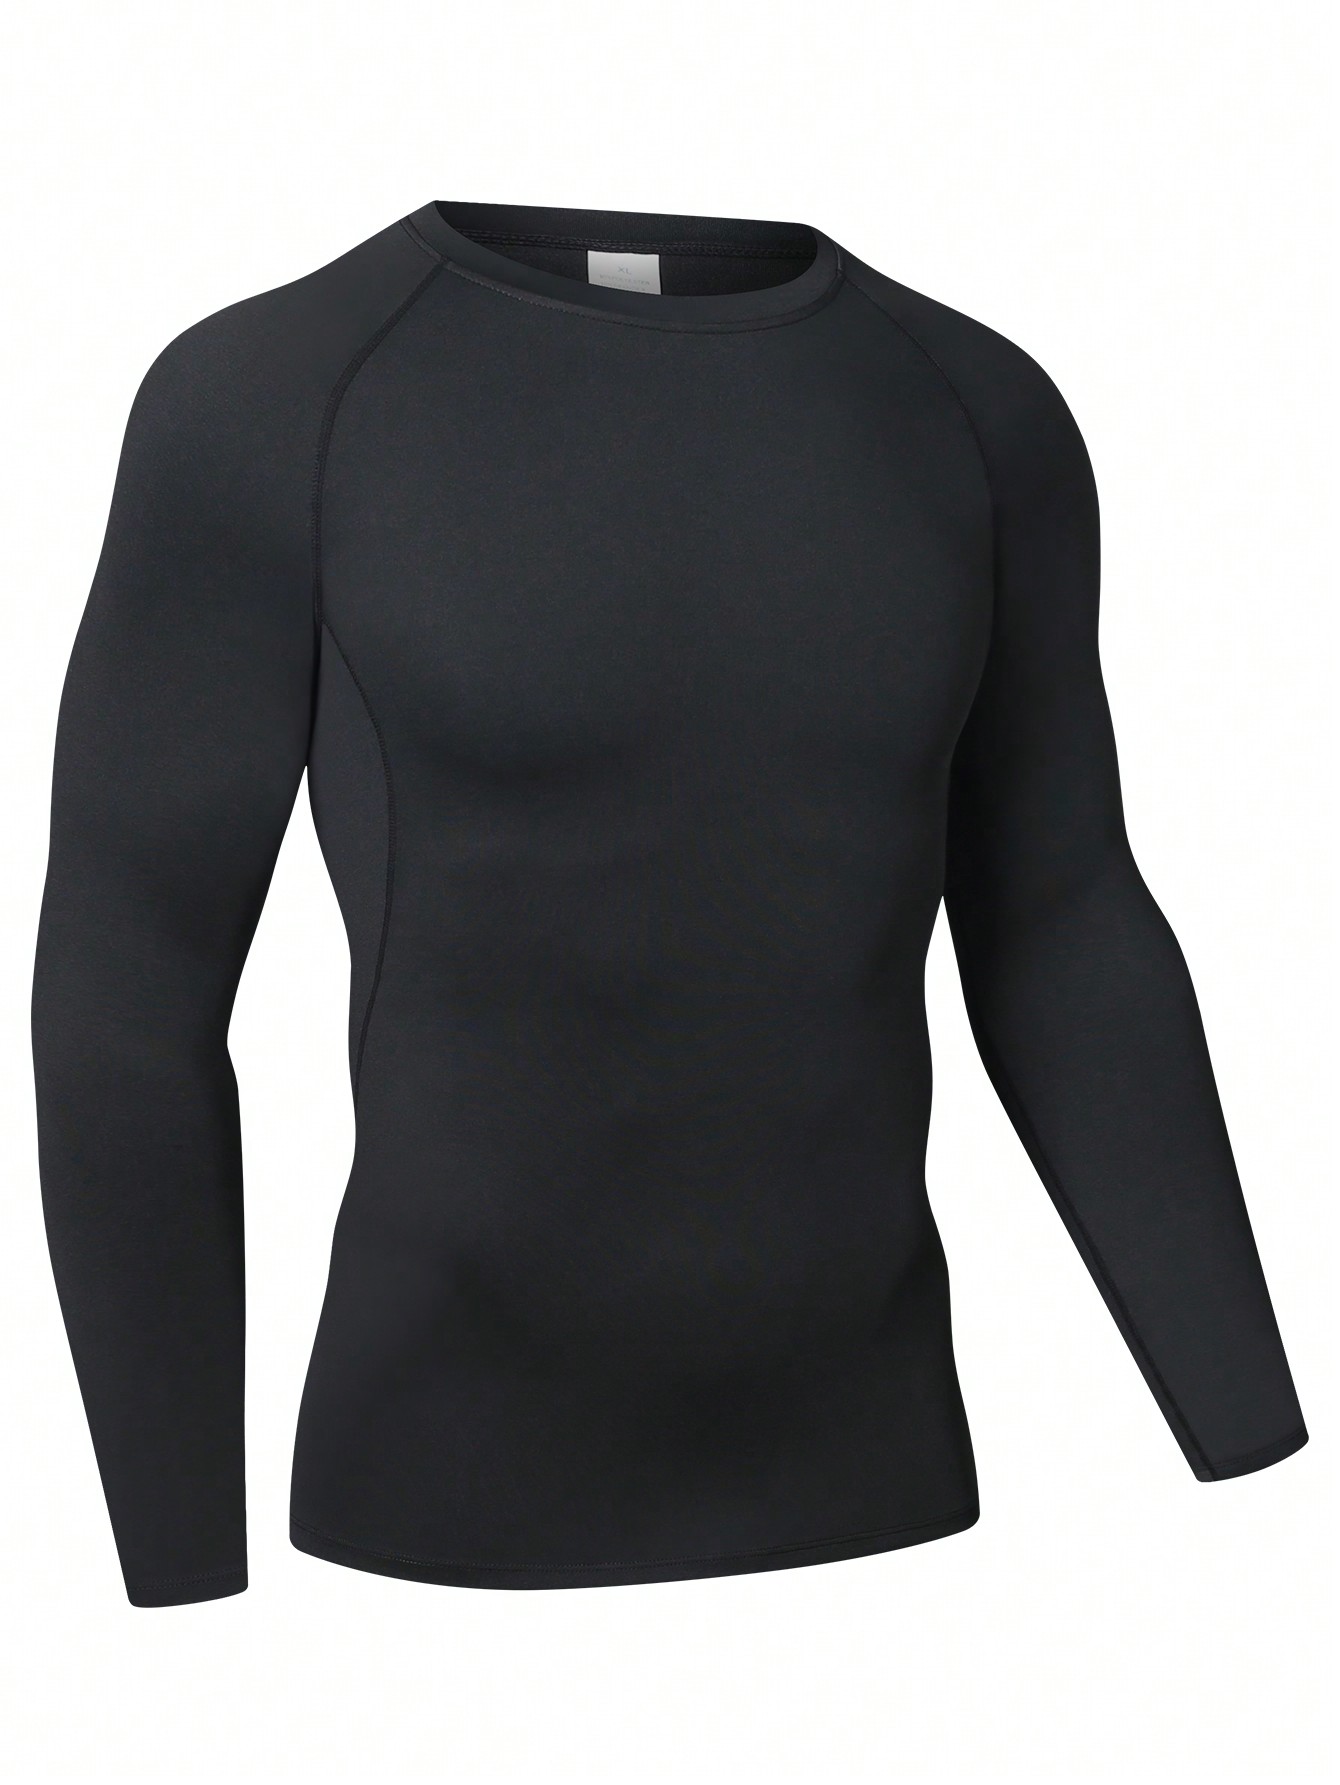 Мужская эластичная компрессионная рубашка для фитнеса с длинными рукавами, черный